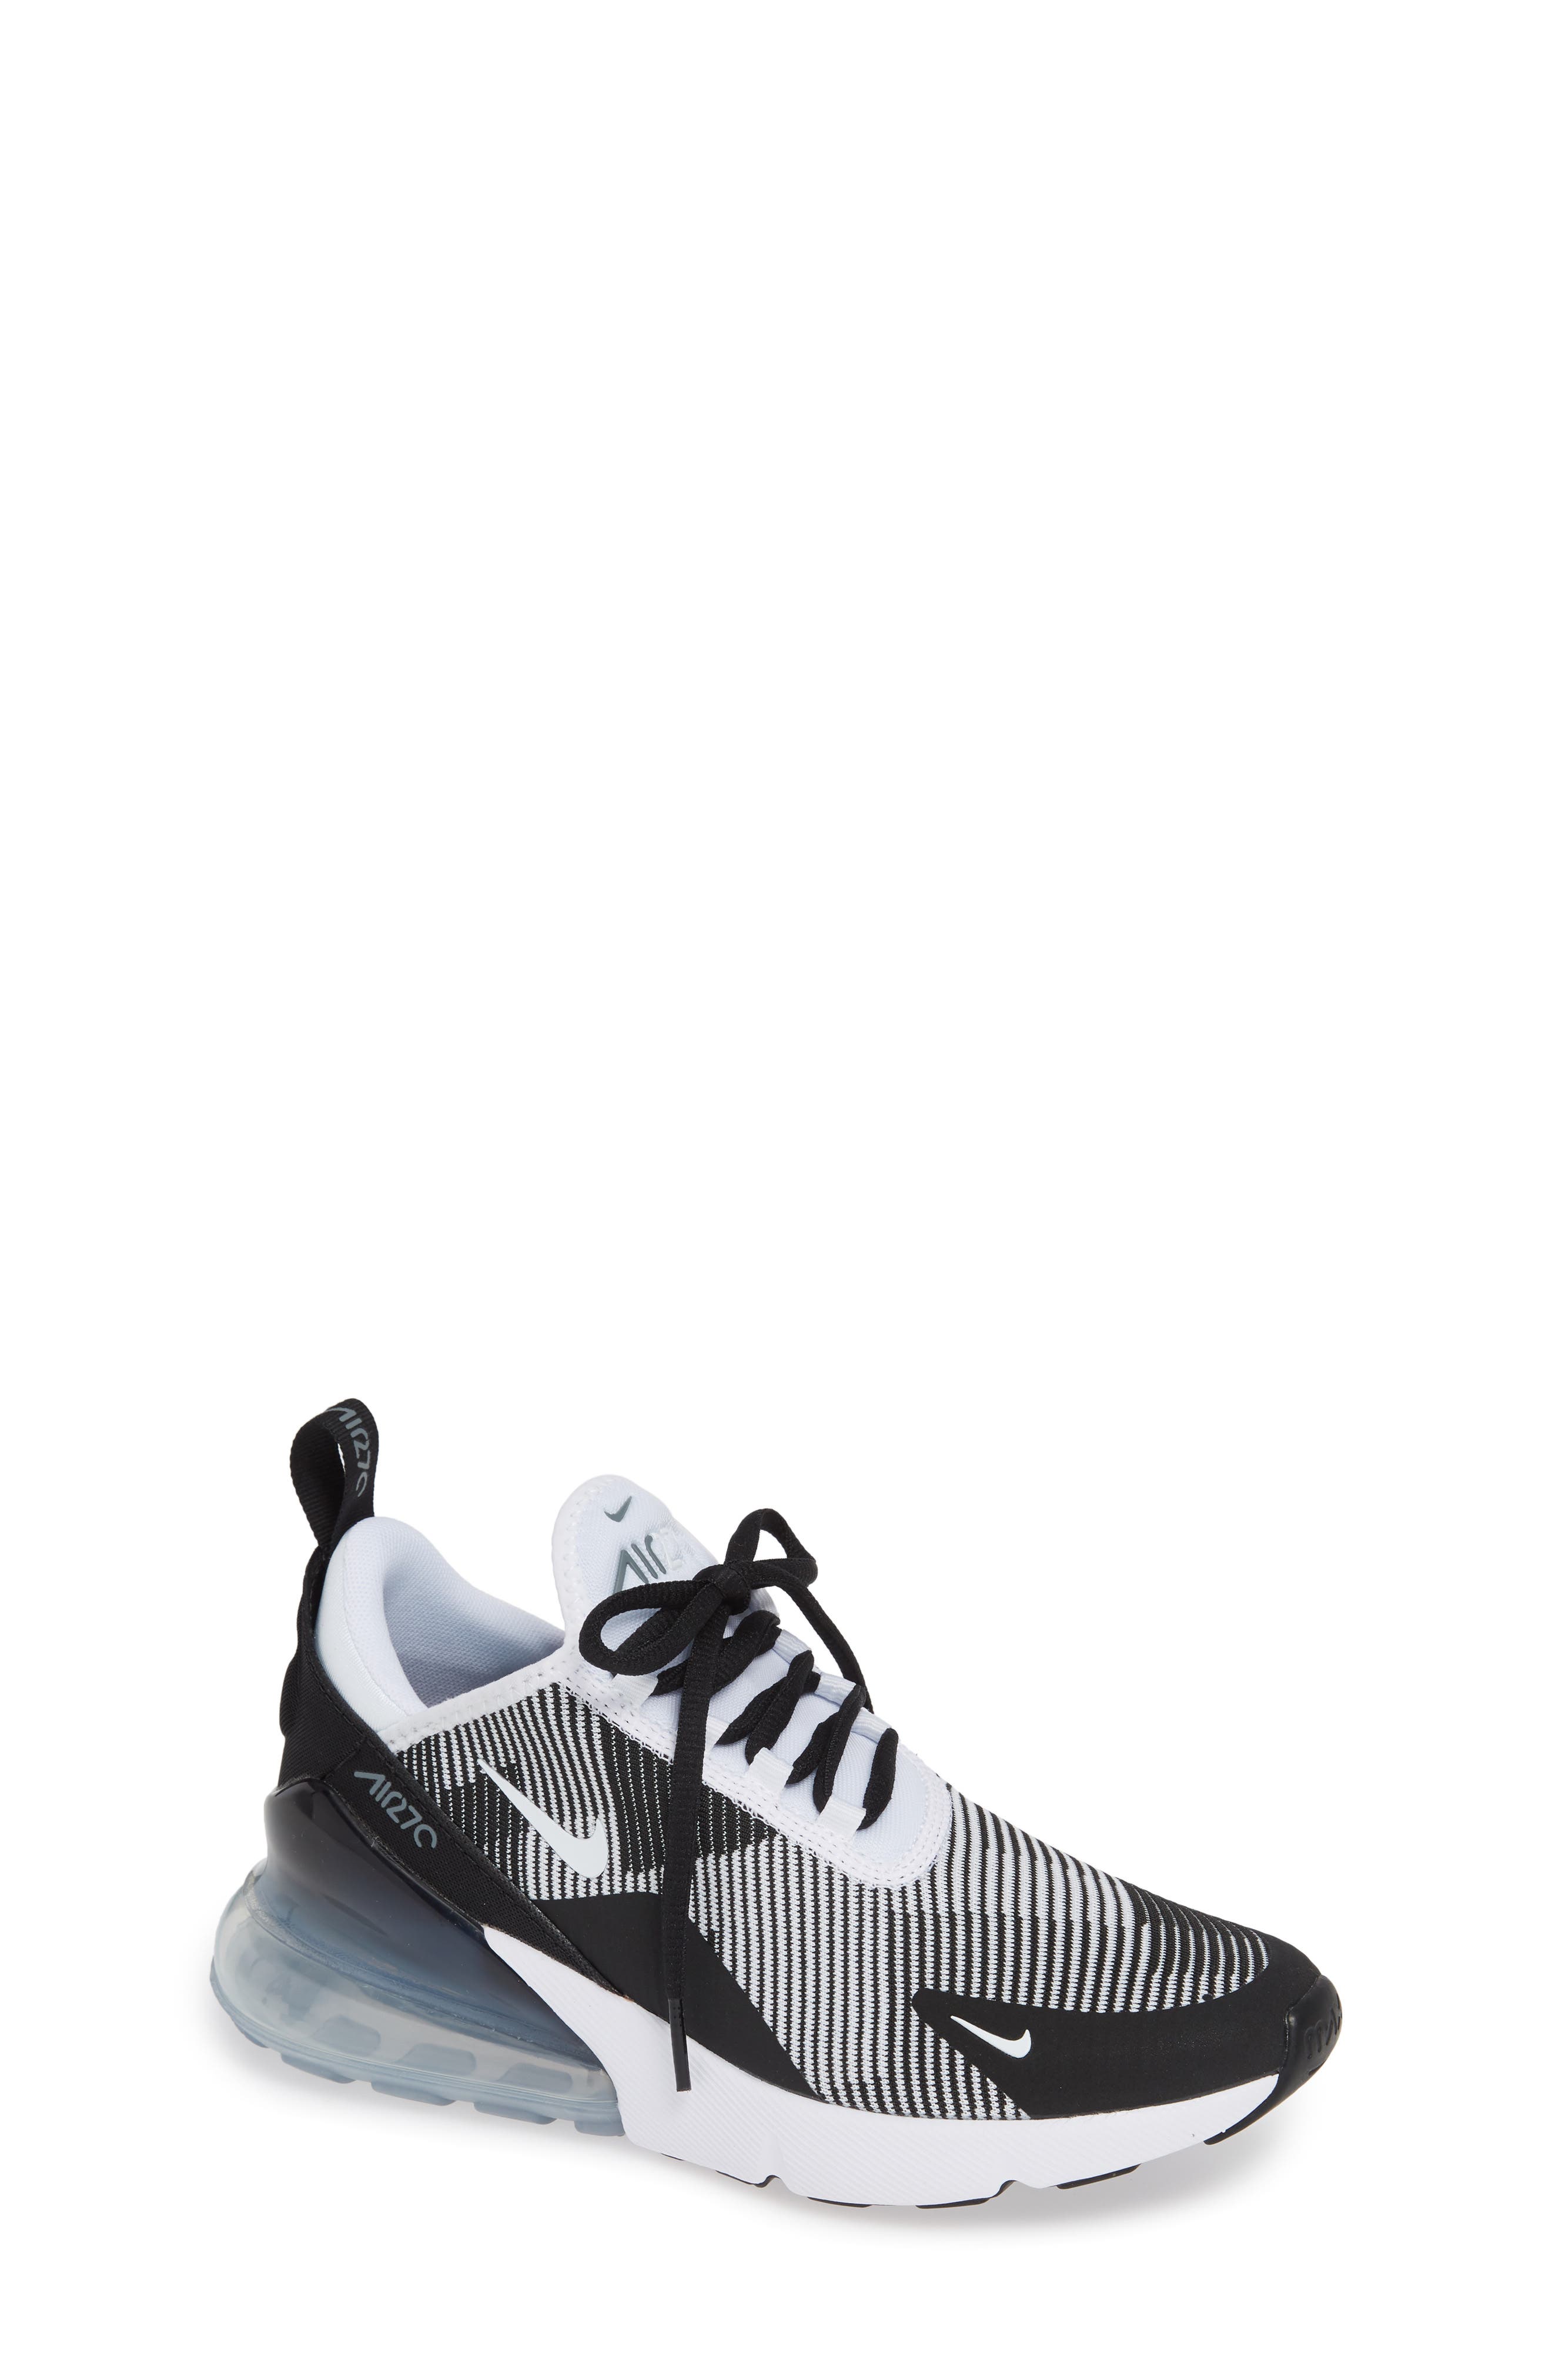 Nike Air Max 270 Sneaker (Big Kids 